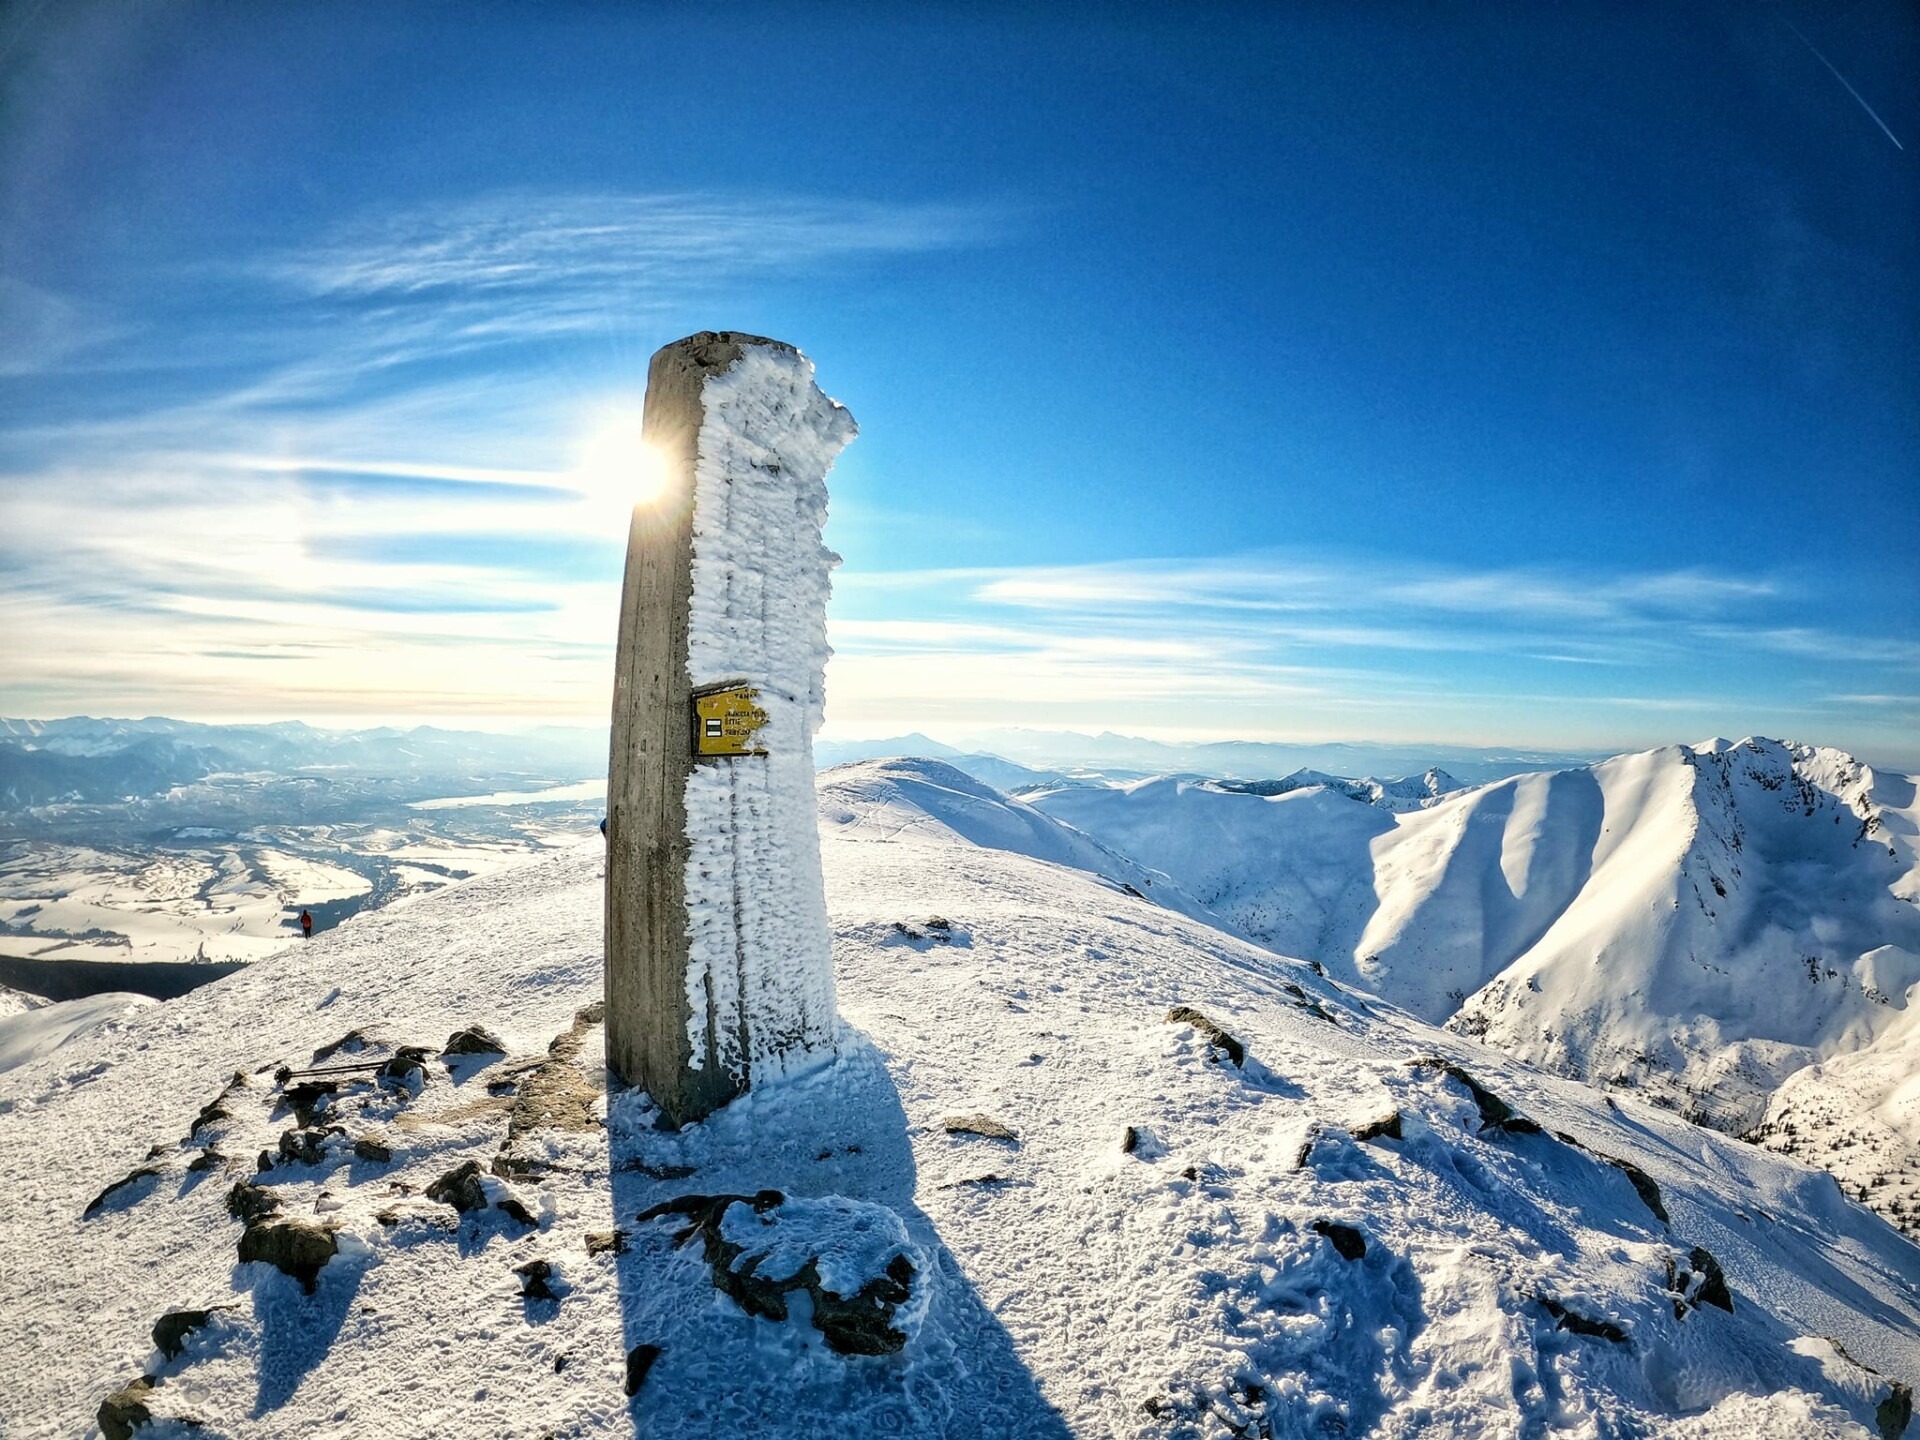 Baranec je jedným z najvyšších vrchov Západných Tatier. Výstup naň by si mali vybrať len skúsení skialpinisti, ktorí majú natrénovanú aj chôdzu v mačkách